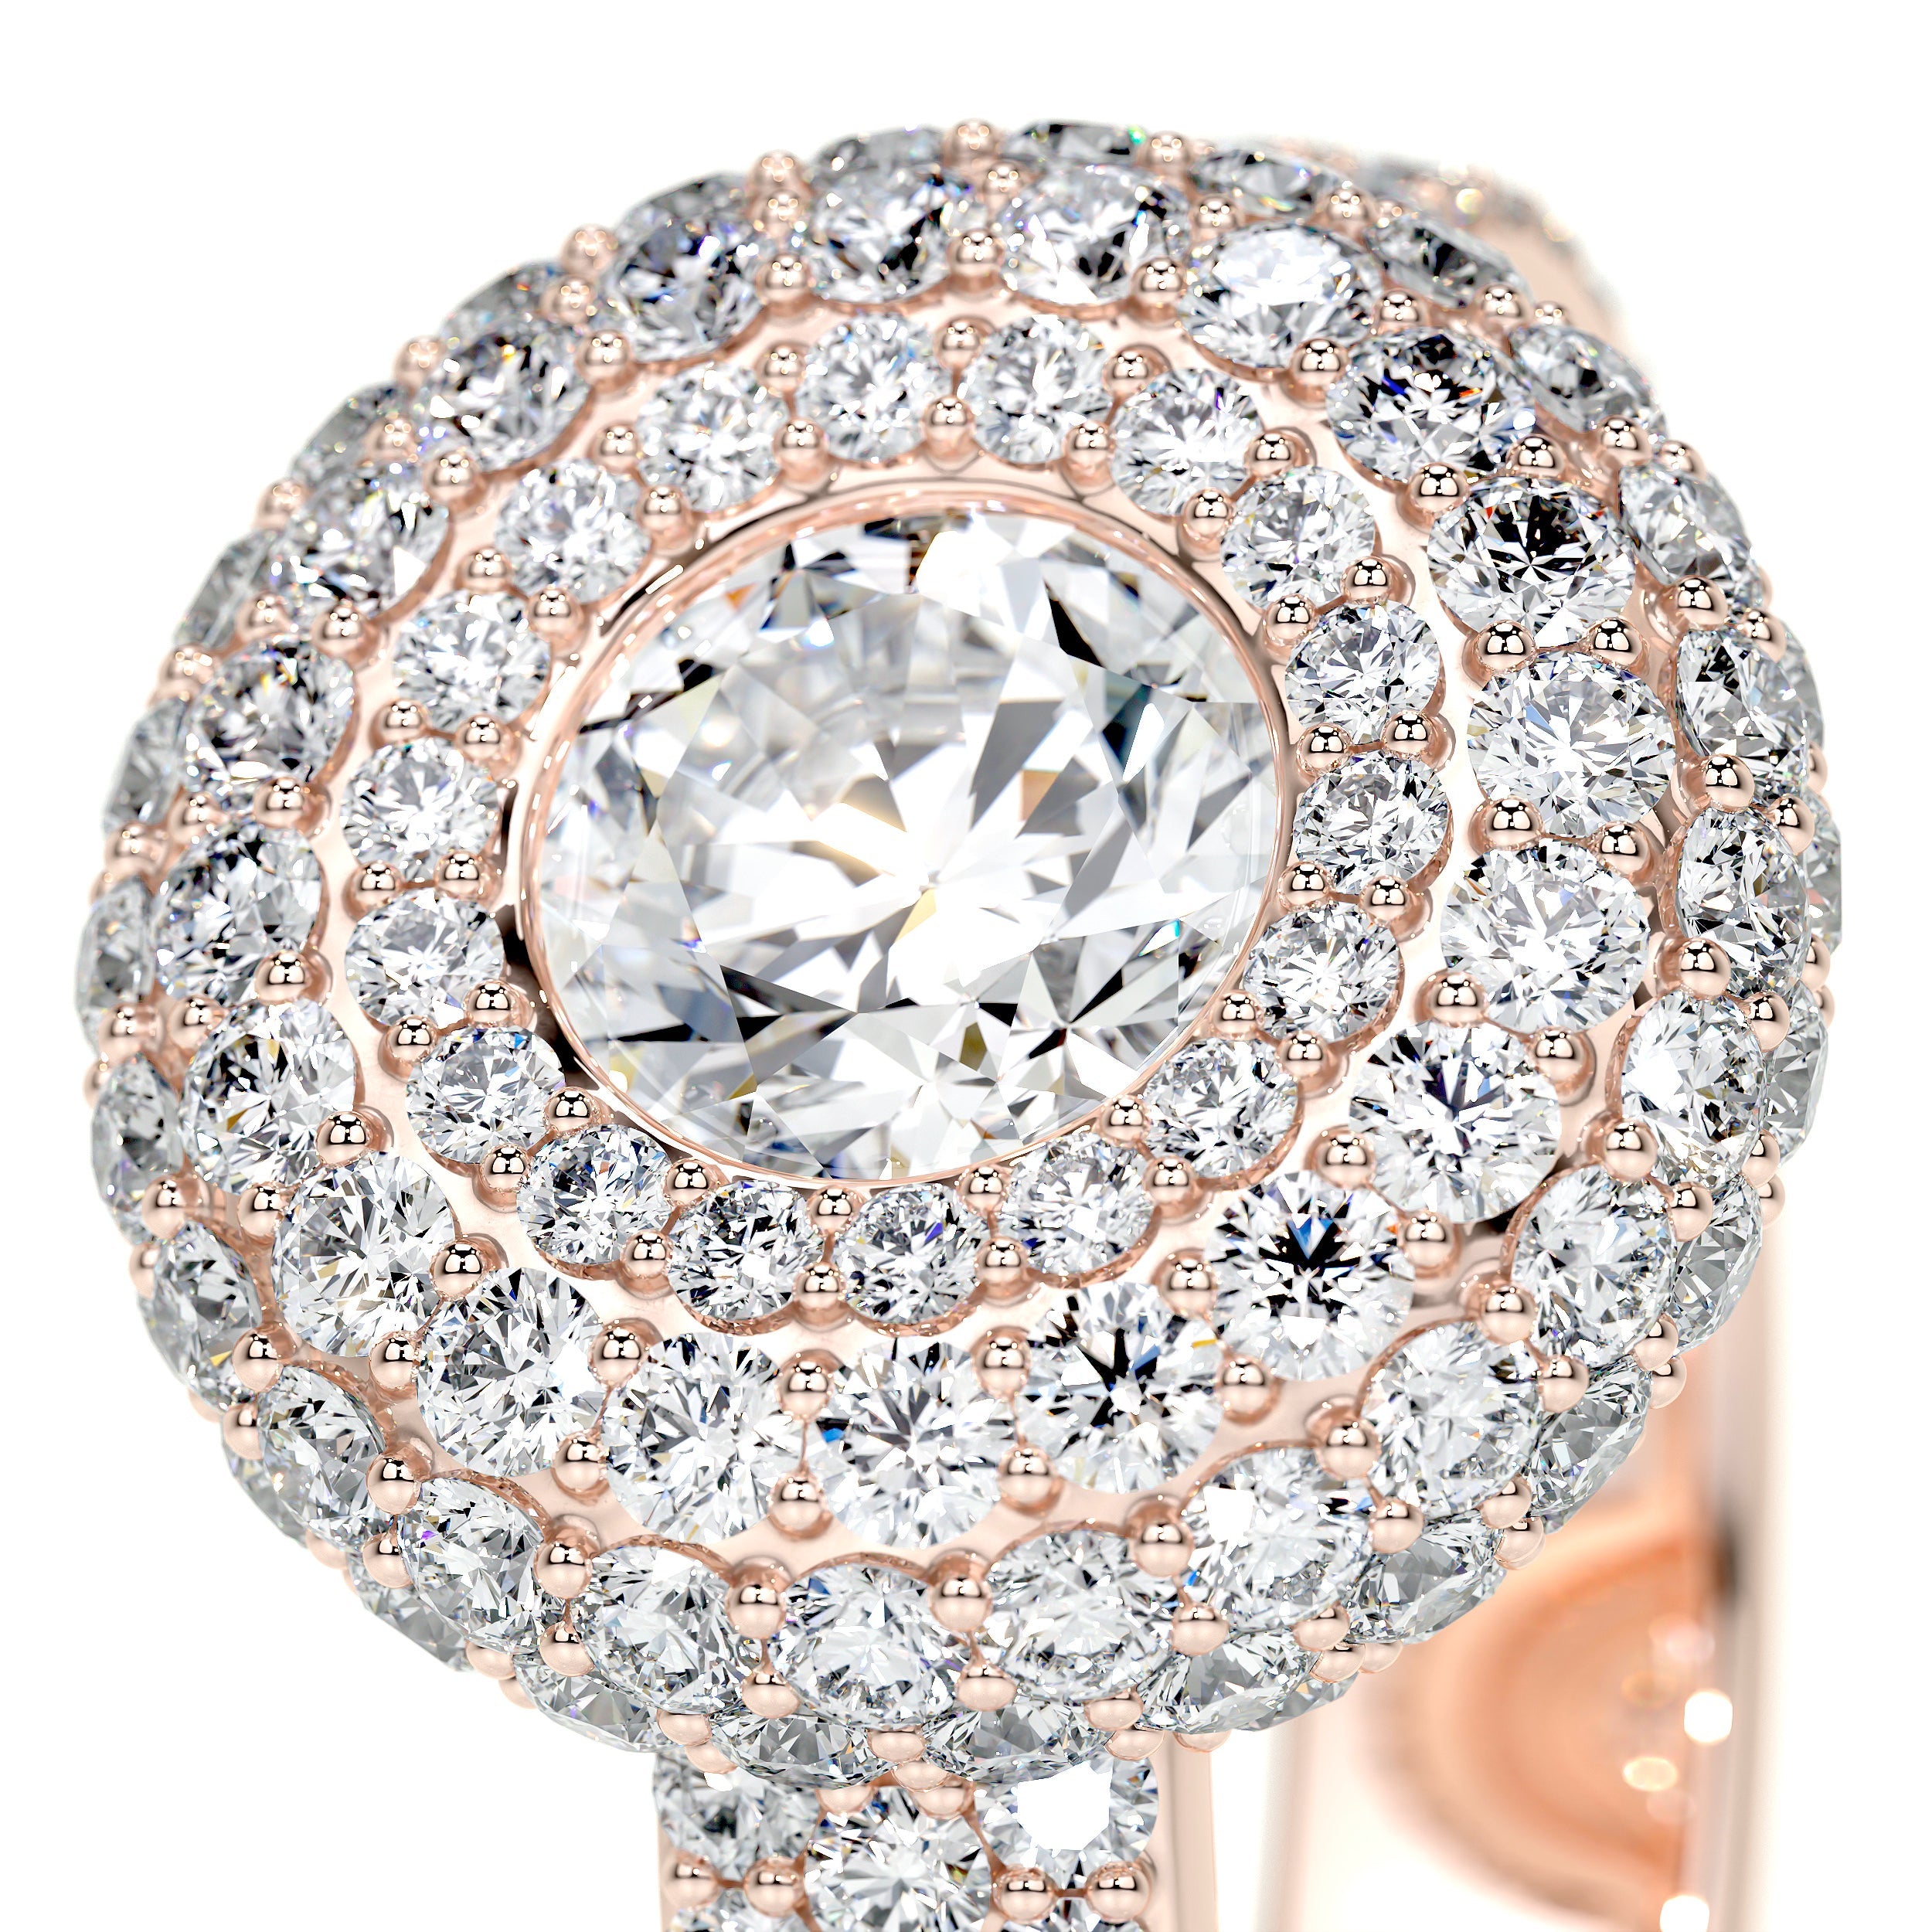 Reagan Lab Grown Diamond Ring   (2.25 Carat) -14K Rose Gold